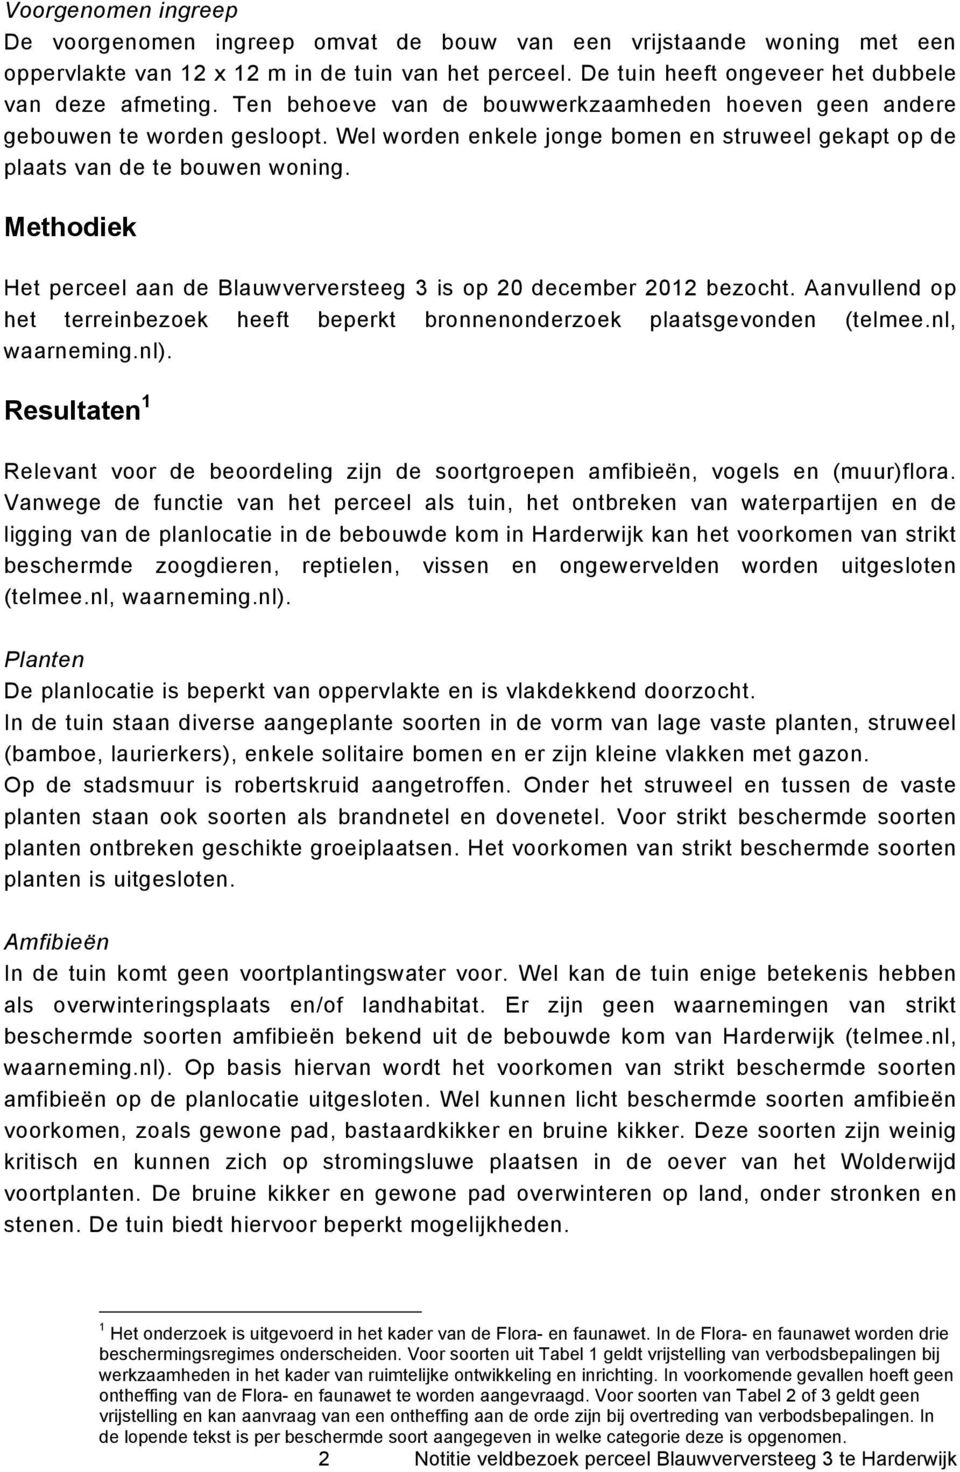 Methodiek Het perceel aan de Blauwverversteeg 3 is op 20 december 2012 bezocht. Aanvullend op het terreinbezoek heeft beperkt bronnenonderzoek plaatsgevonden (telmee.nl, waarneming.nl).